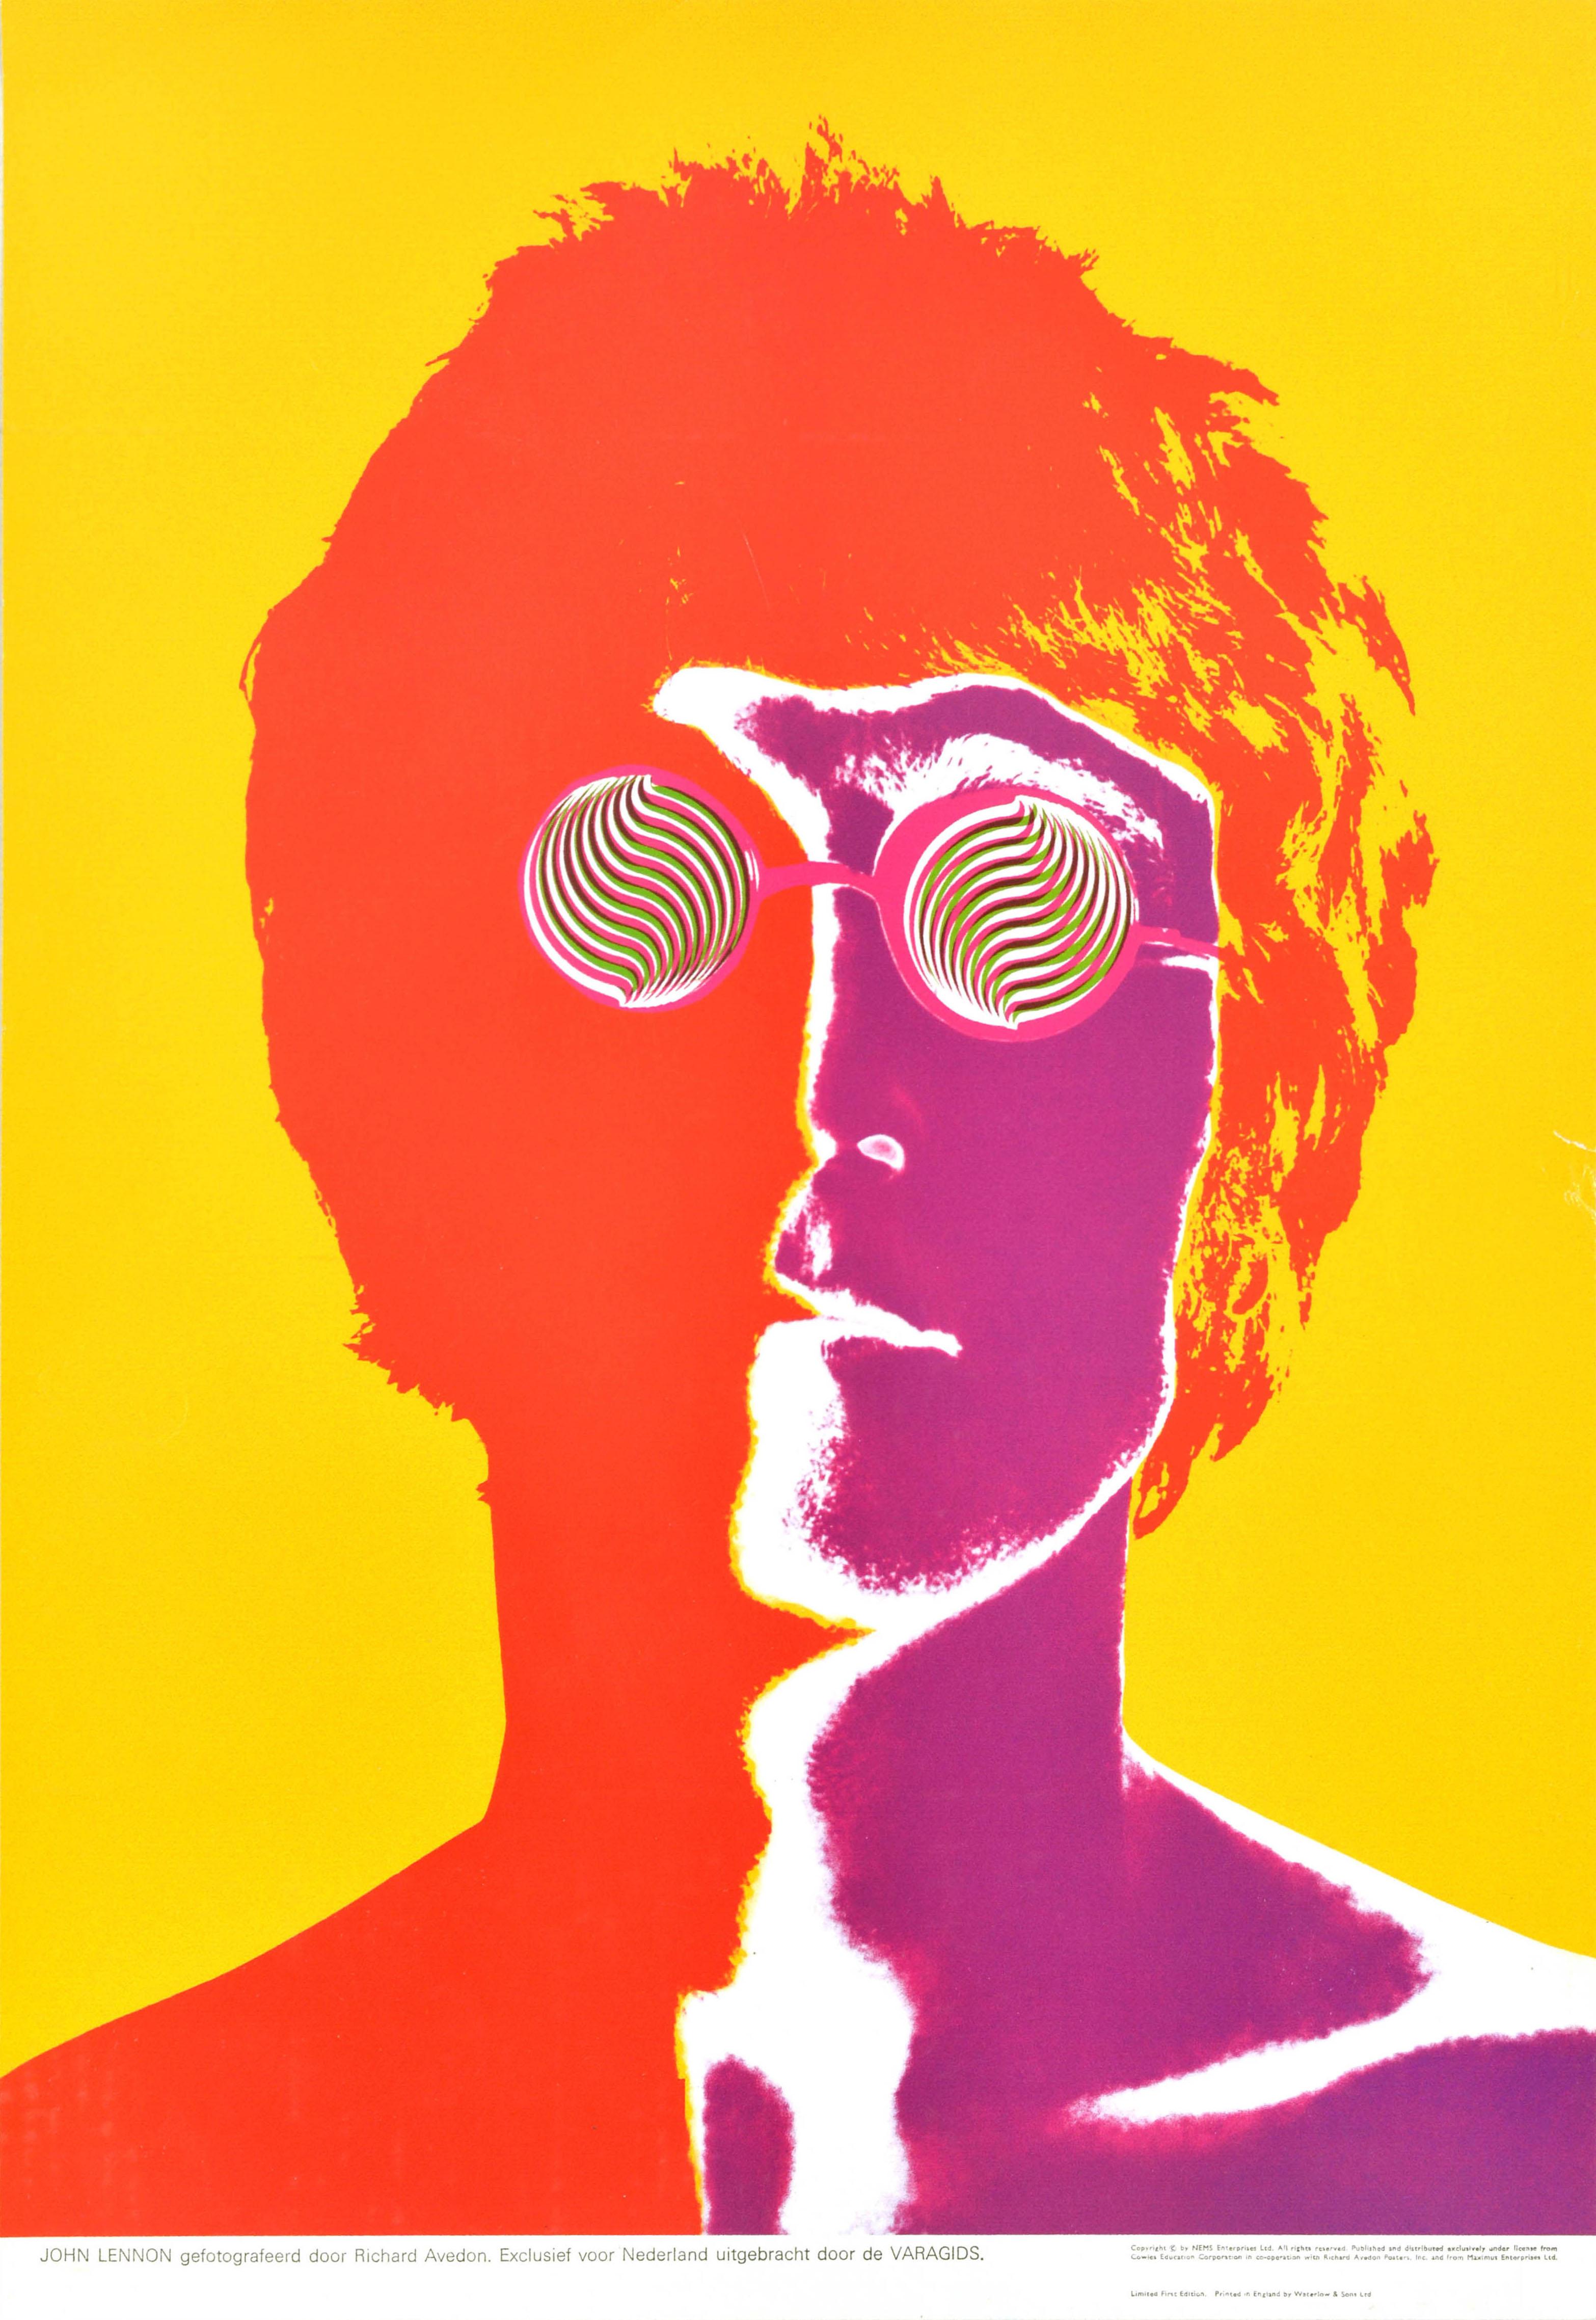 Print Richard Avedon - Affiche publicitaire vintage originale des Beatles avec les verres John Lennon d'Avedon